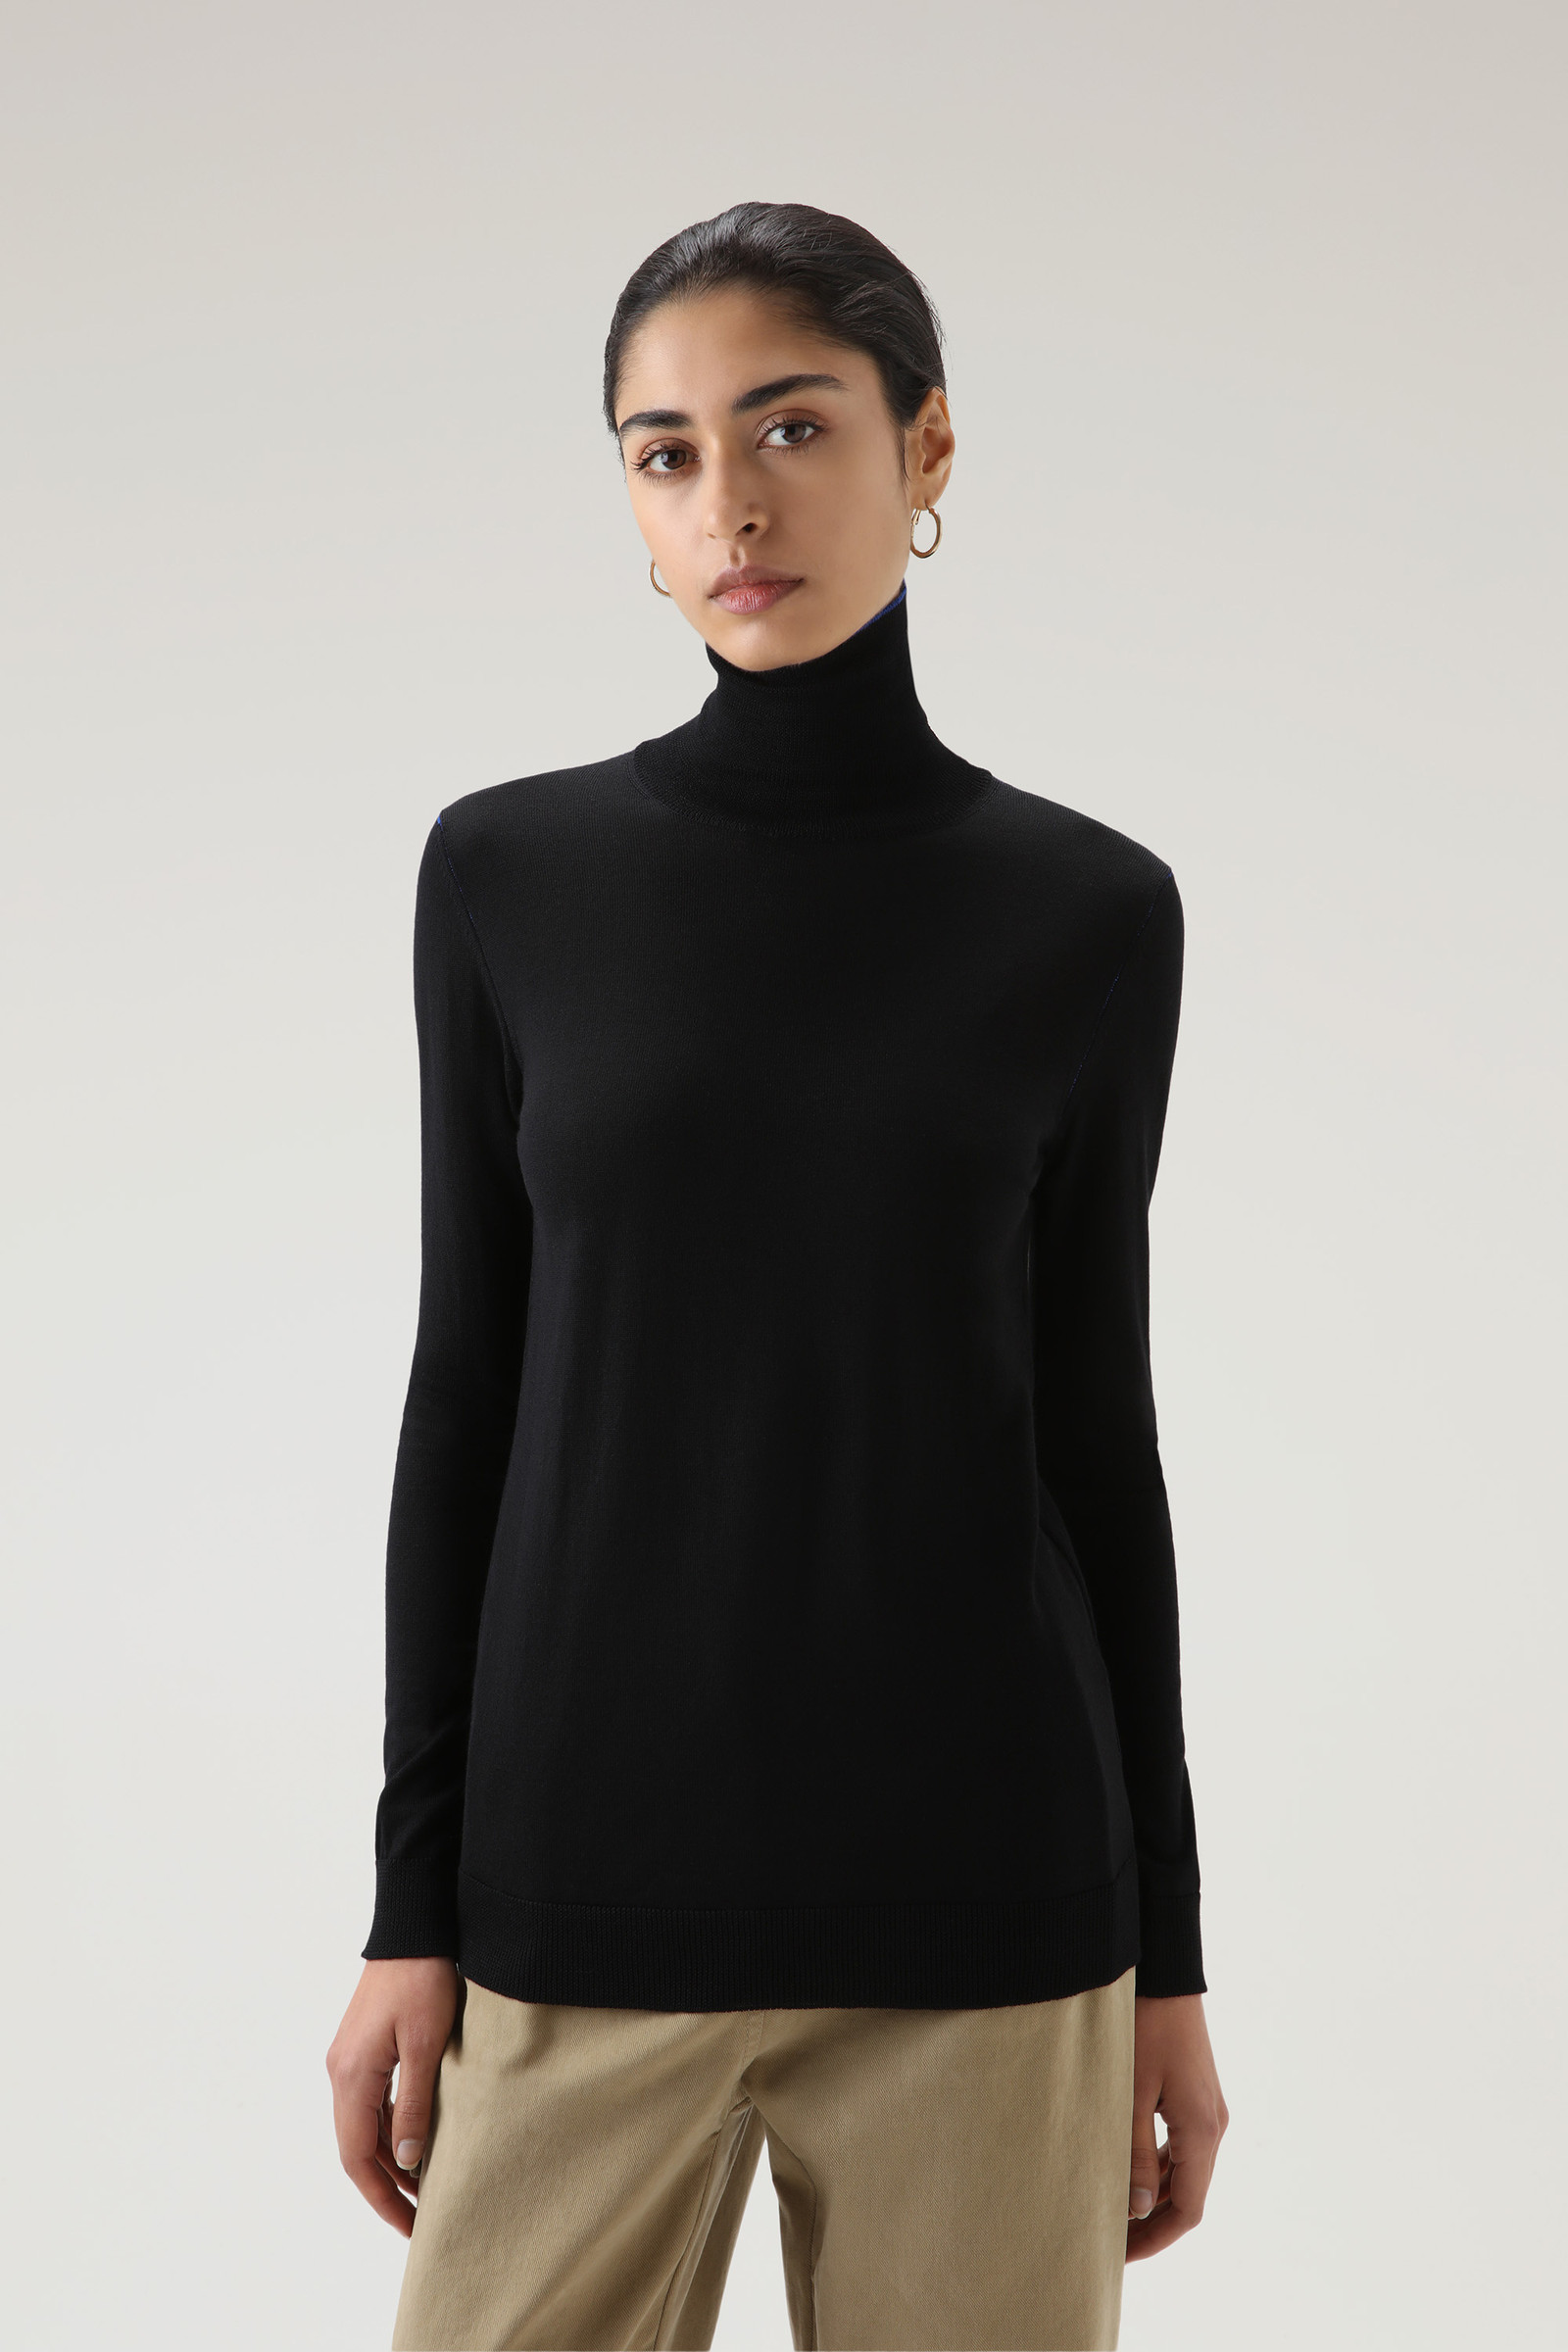 Women's Merino Virgin Wool Turtleneck Black | Woolrich USA